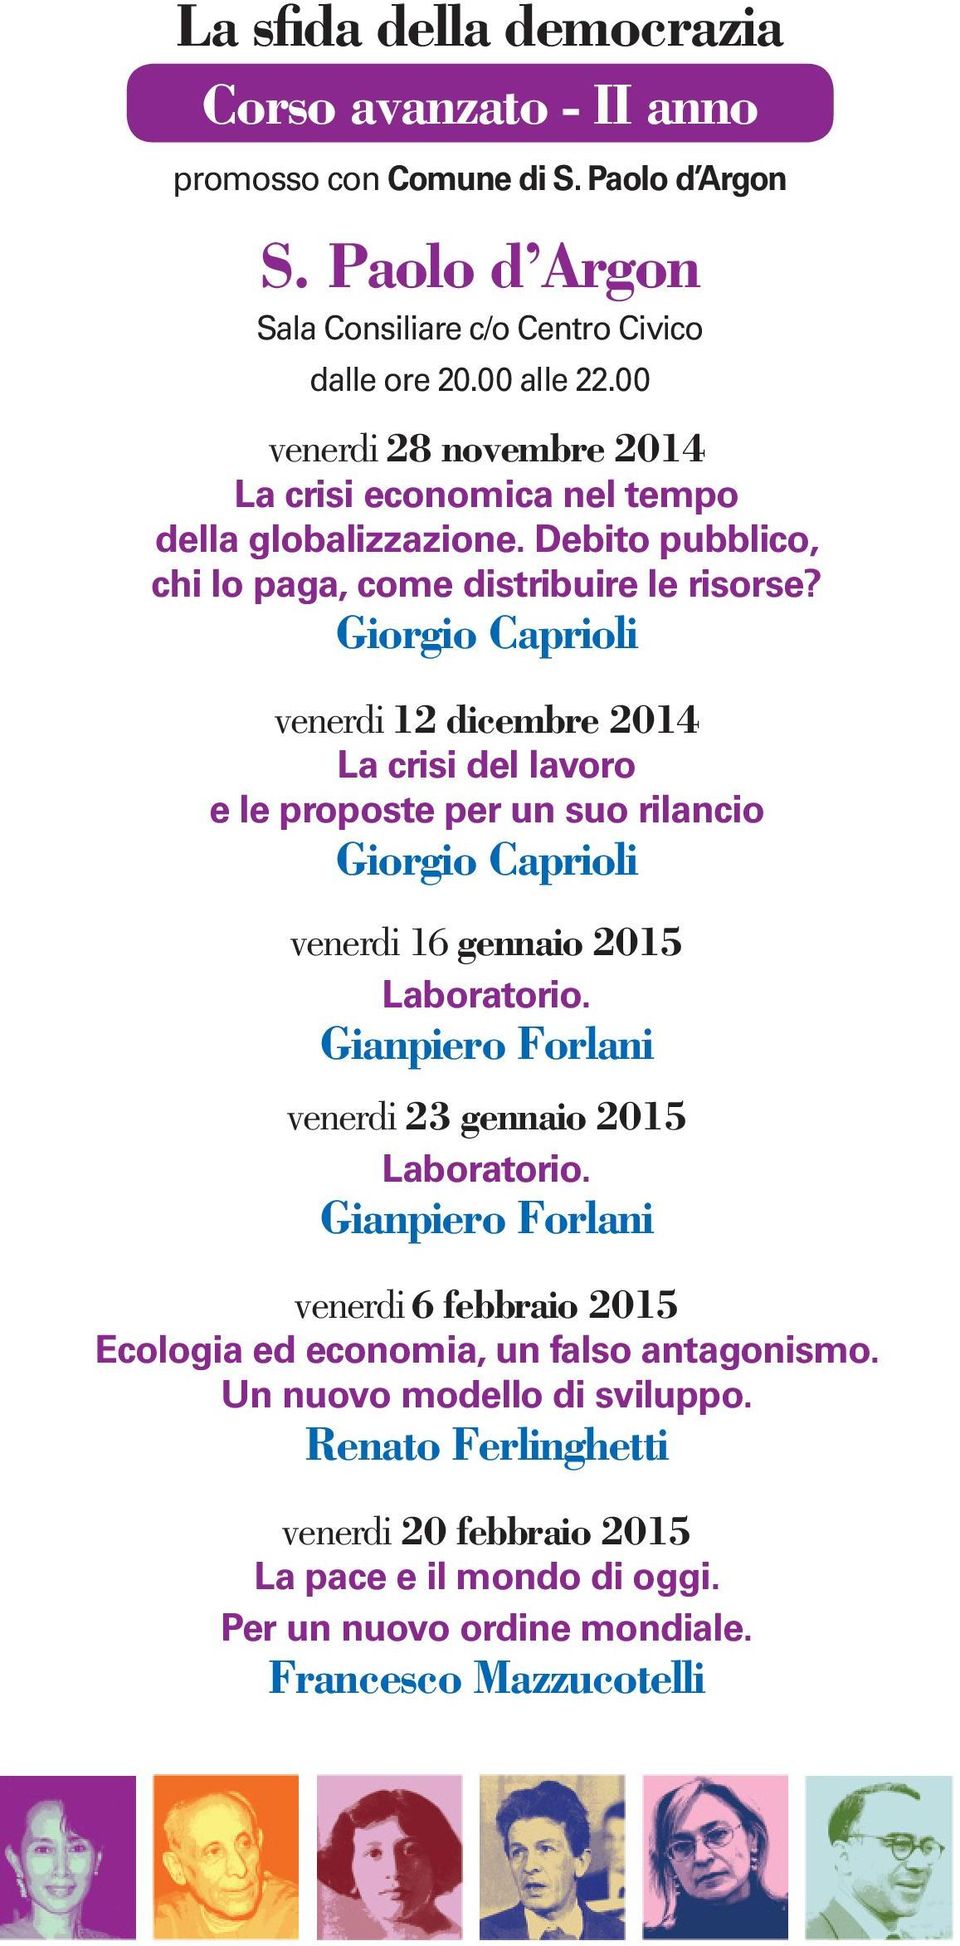 Giorgio Caprioli venerdi 12 dicembre 2014 La crisi del lavoro e le proposte per un suo rilancio Giorgio Caprioli venerdi 16 gennaio 2015 Laboratorio.